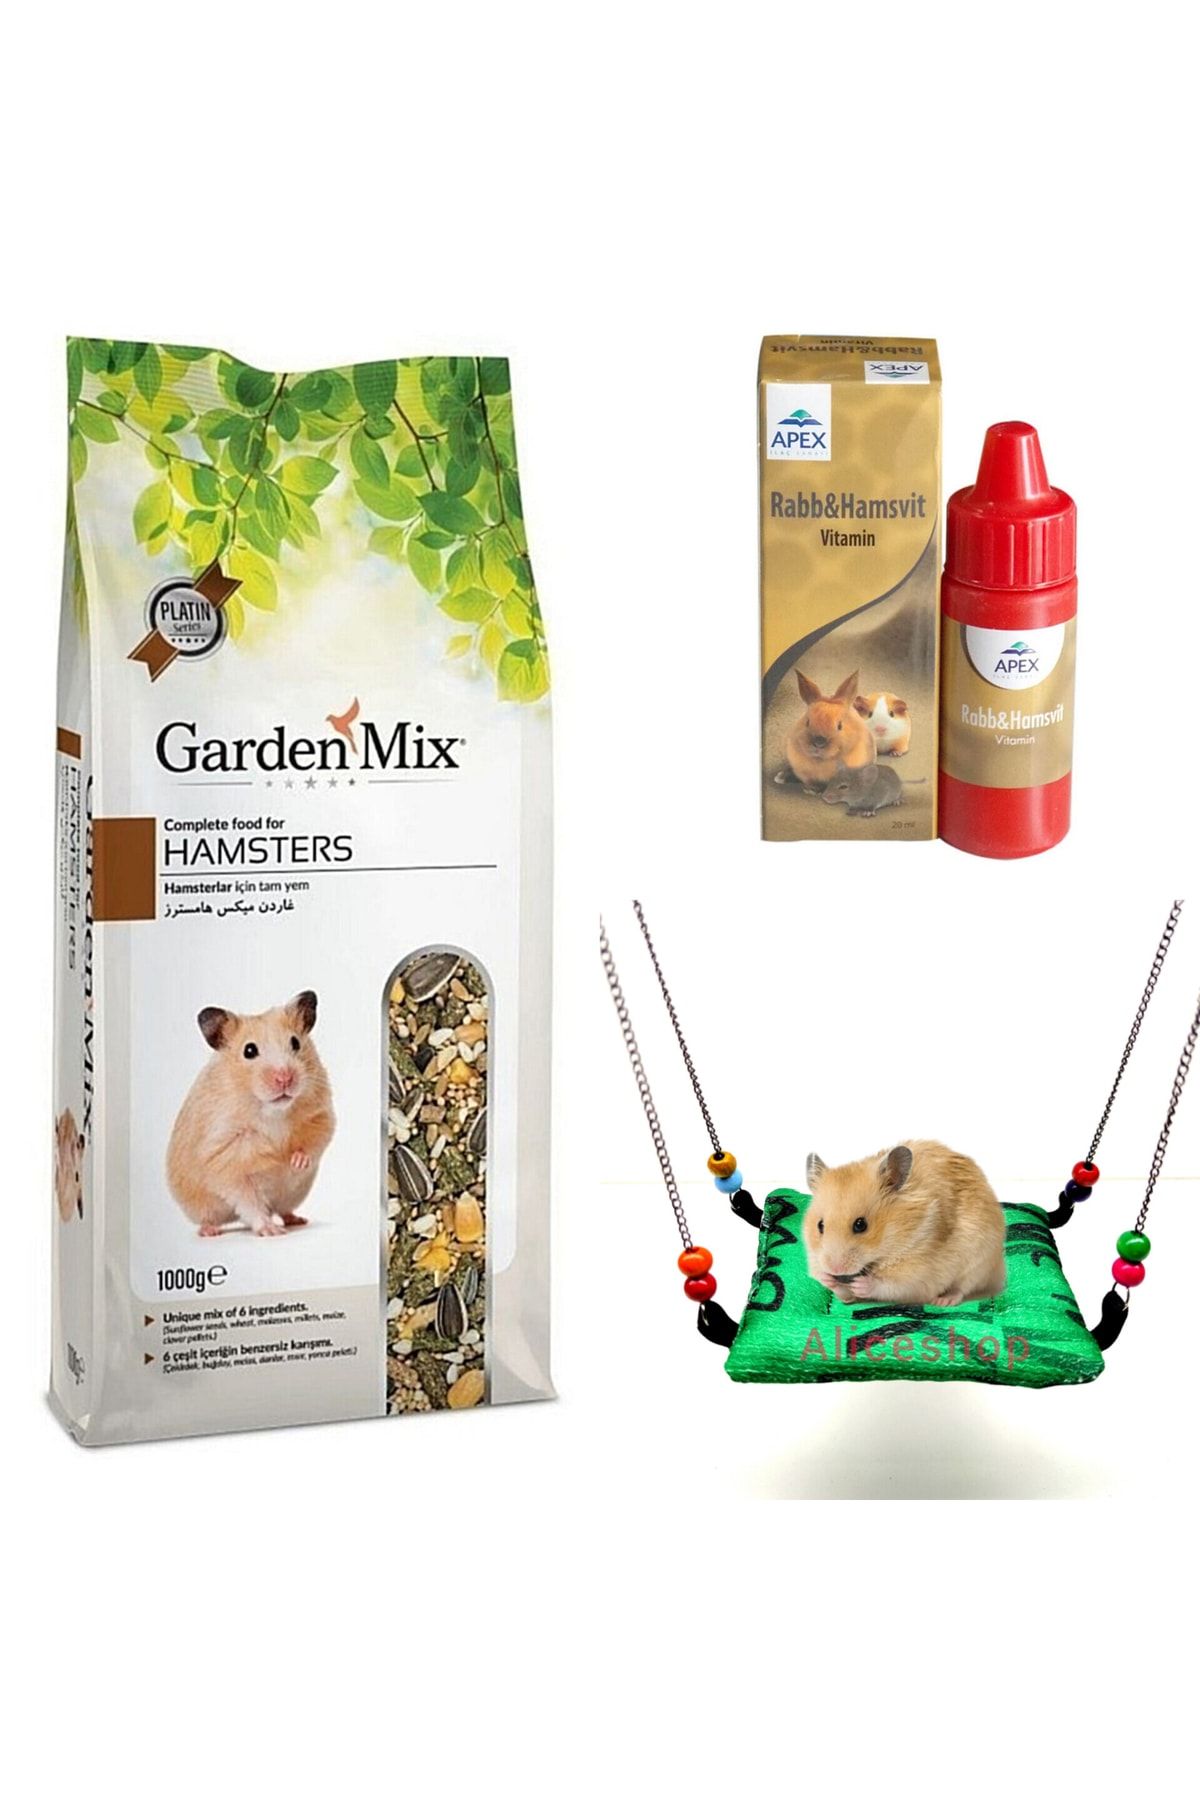 Gardenmix Hamster Yemi Ve Apex Vitamin Hamster Hamağı Hediyeli